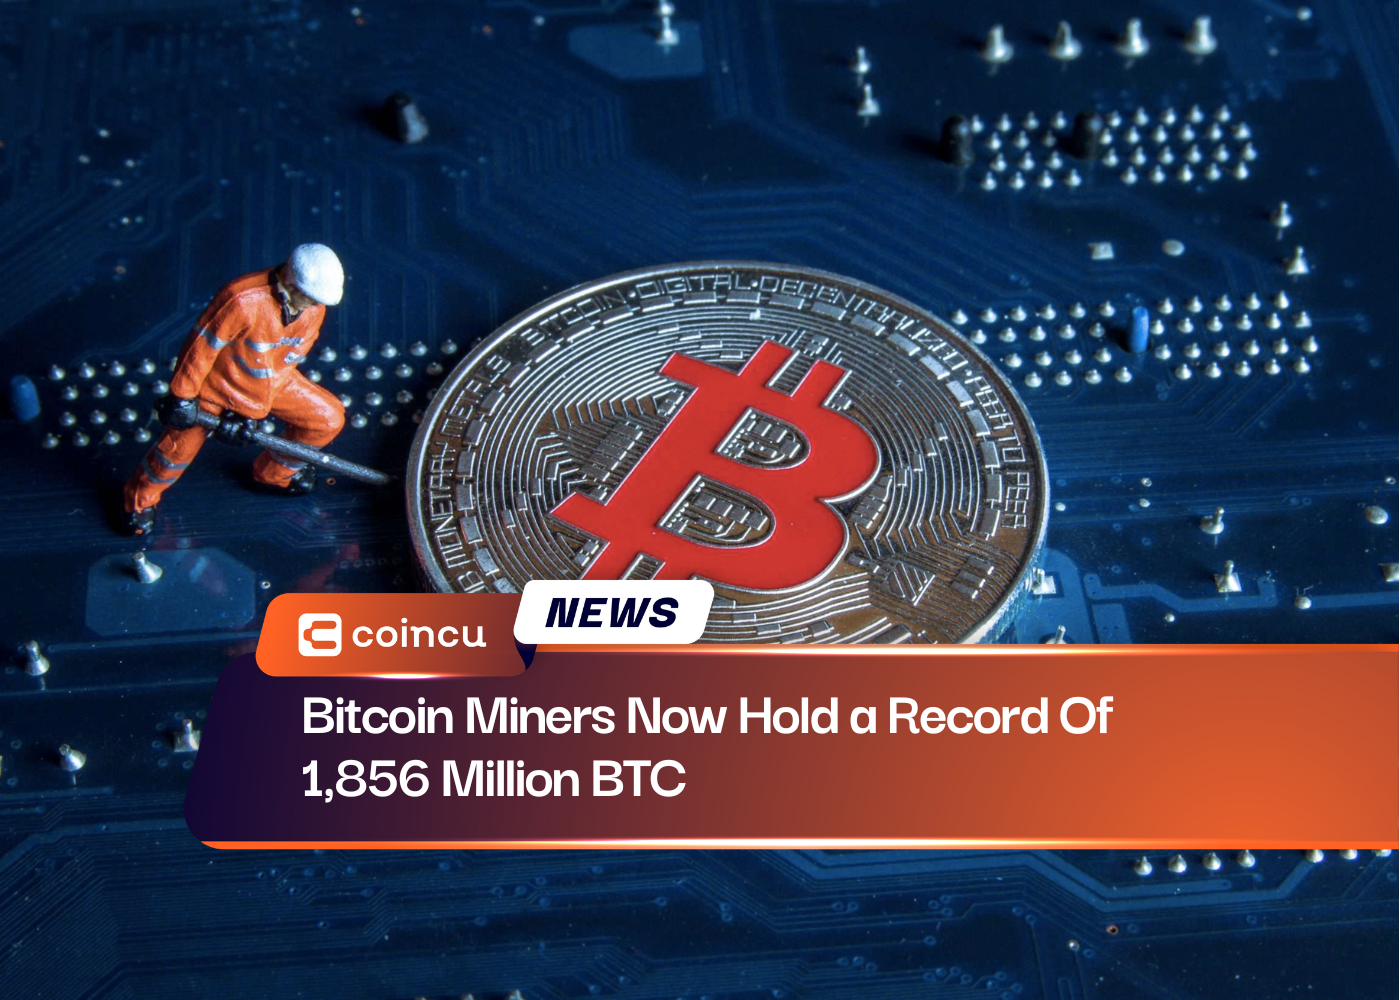 Mineradores de Bitcoin agora detêm um recorde de 1,856 milhões de BTC